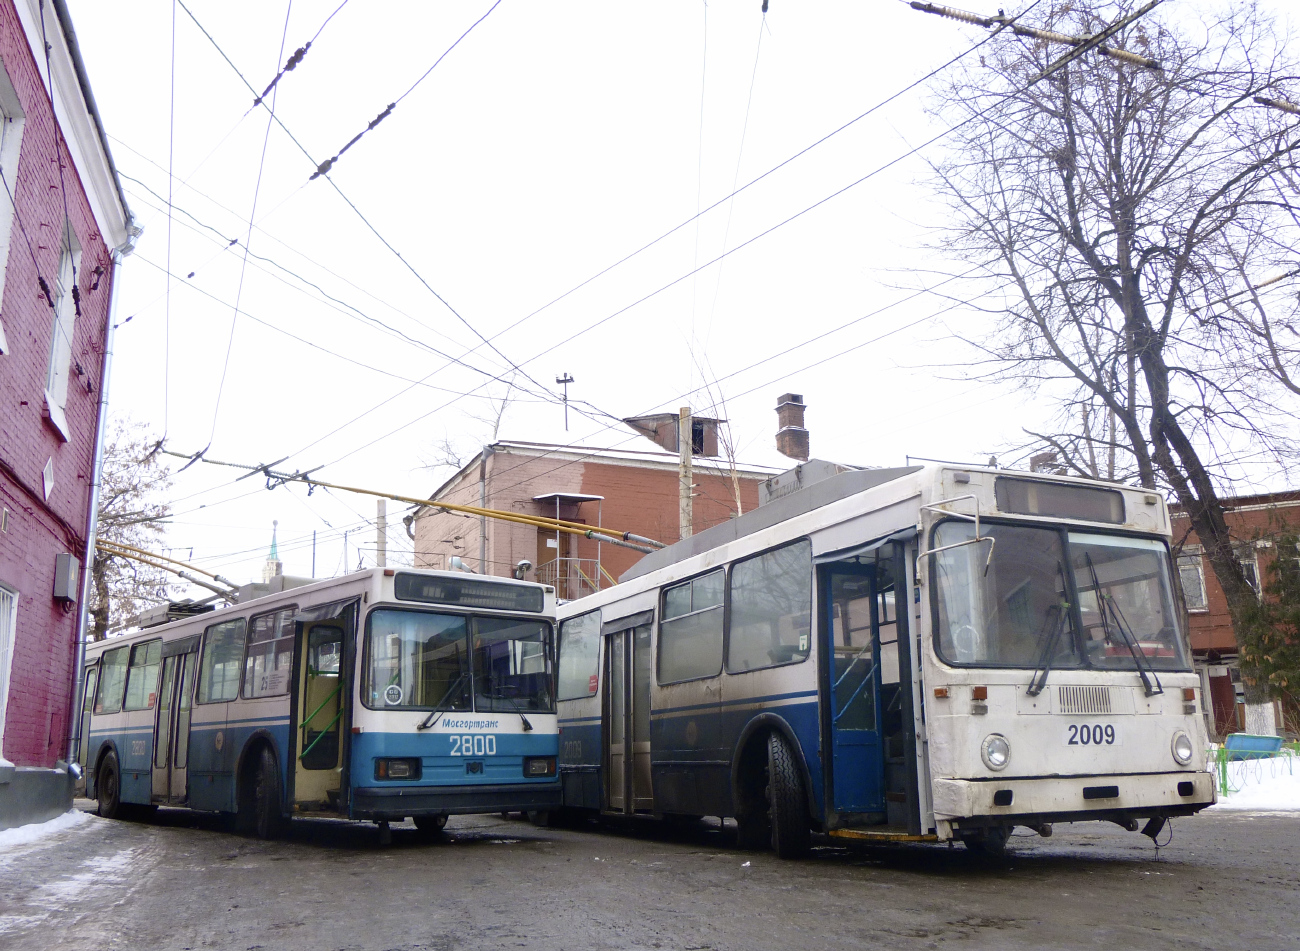 Москва — Троллейбусные парки: [2] территория на Новорязанской улице